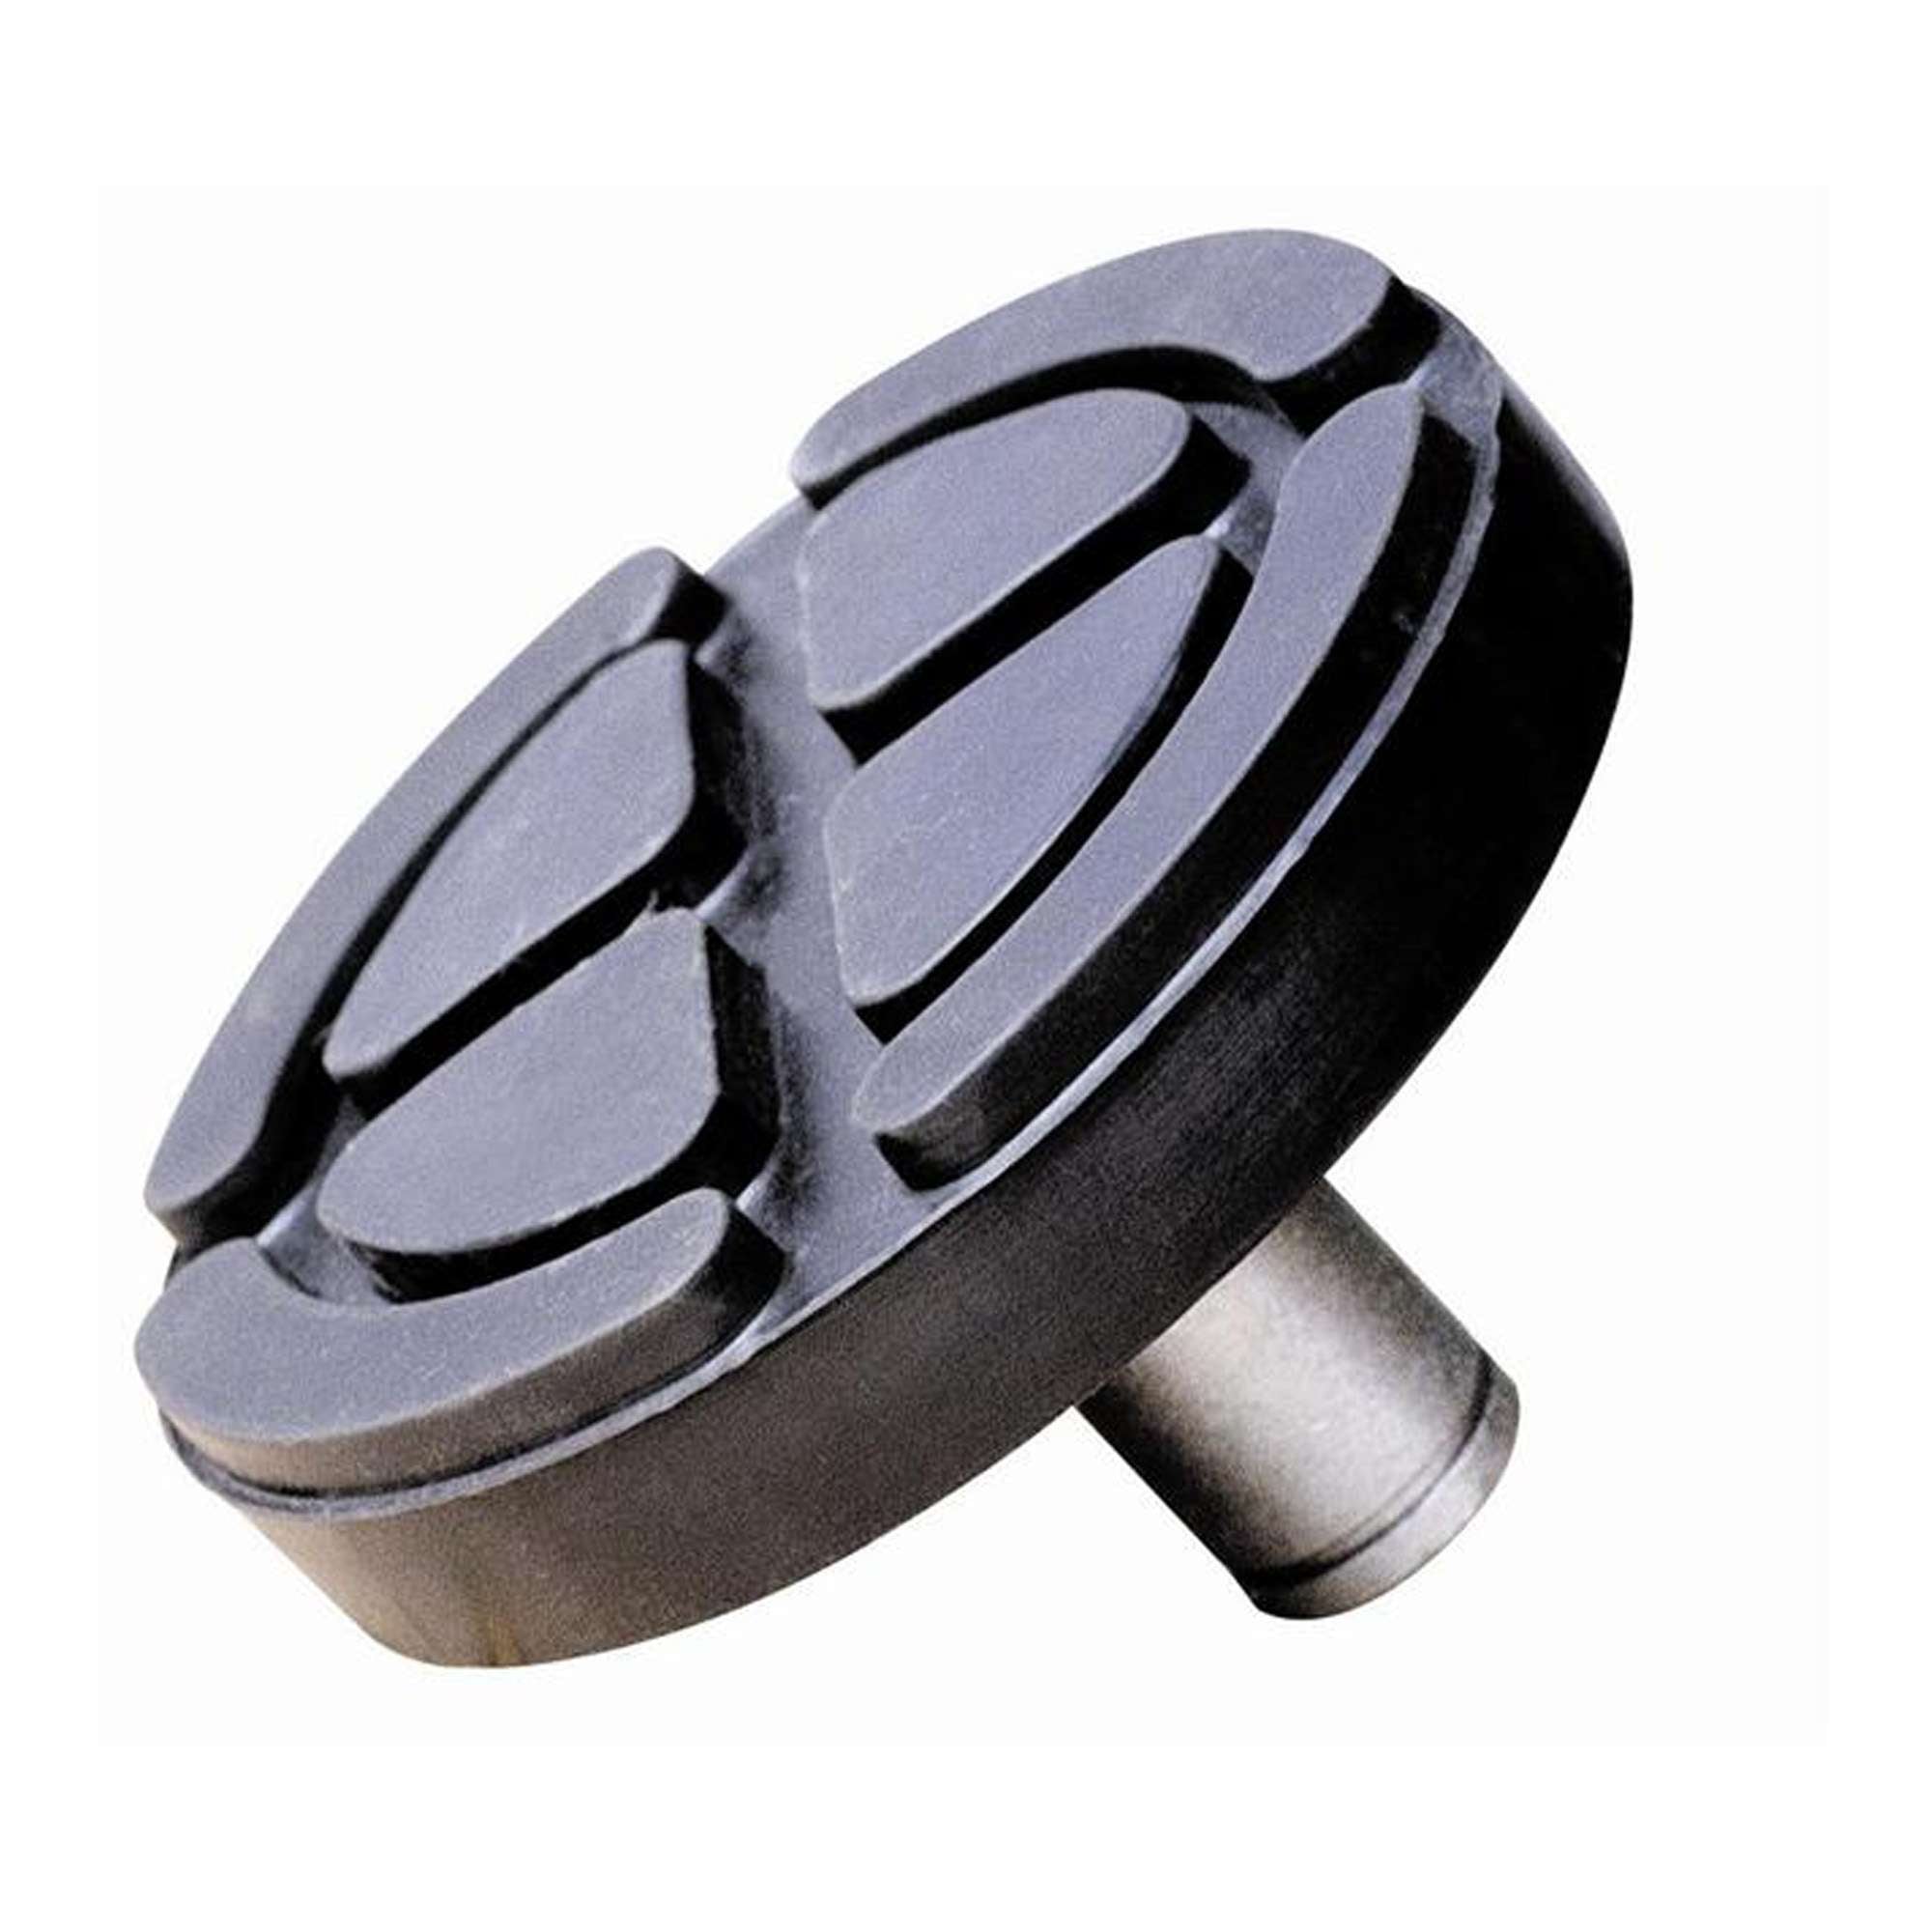 Supporto in acciaio ricoperto in gomma per sollevatori idraulici - OMCN 392/C